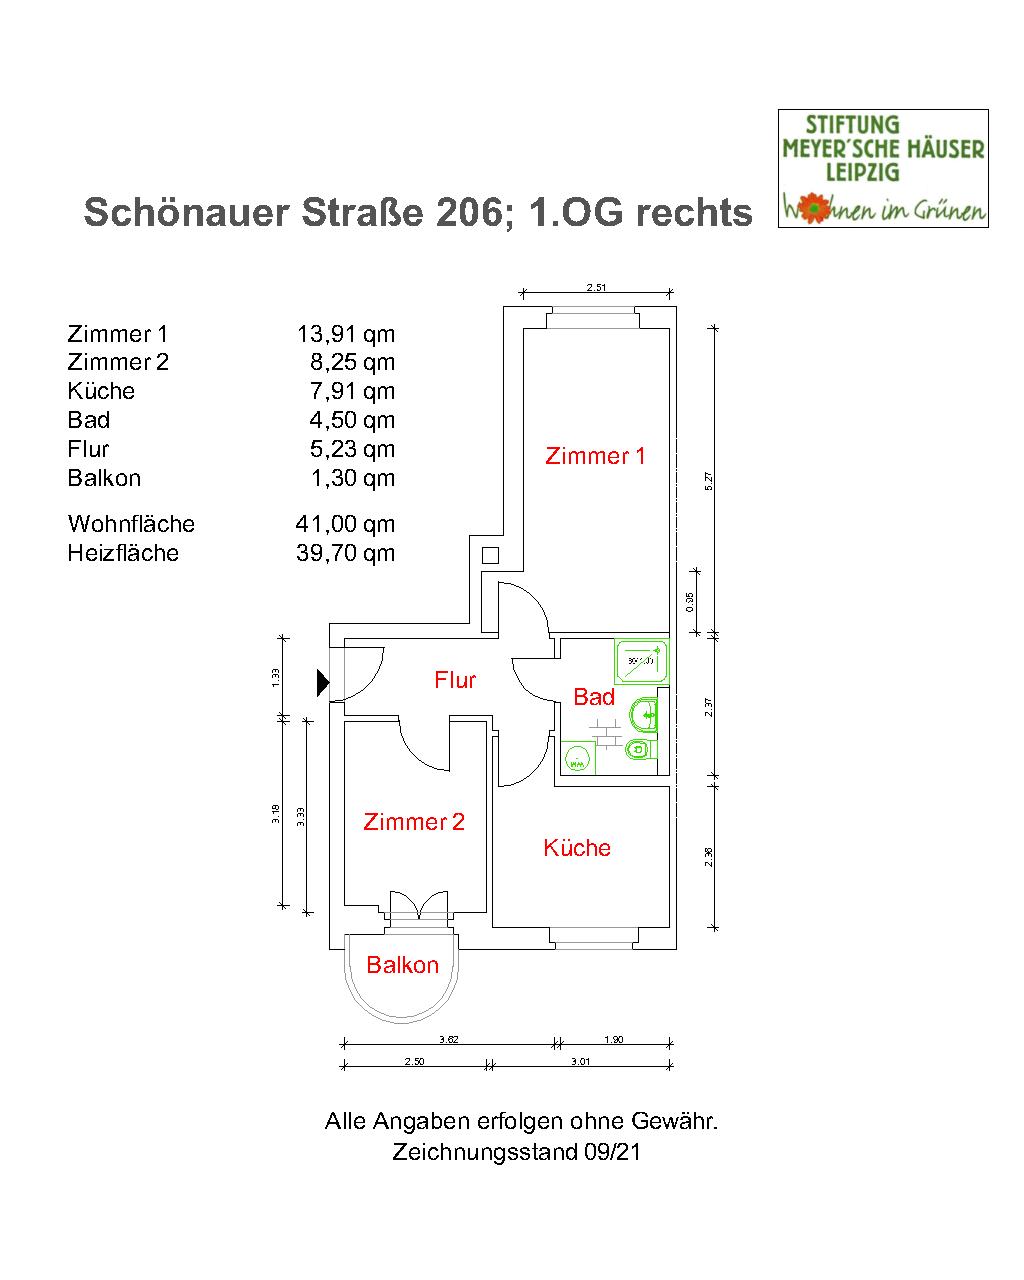 Schoenauer-Str-206-1-rechts-nach-Sanierung.jpg